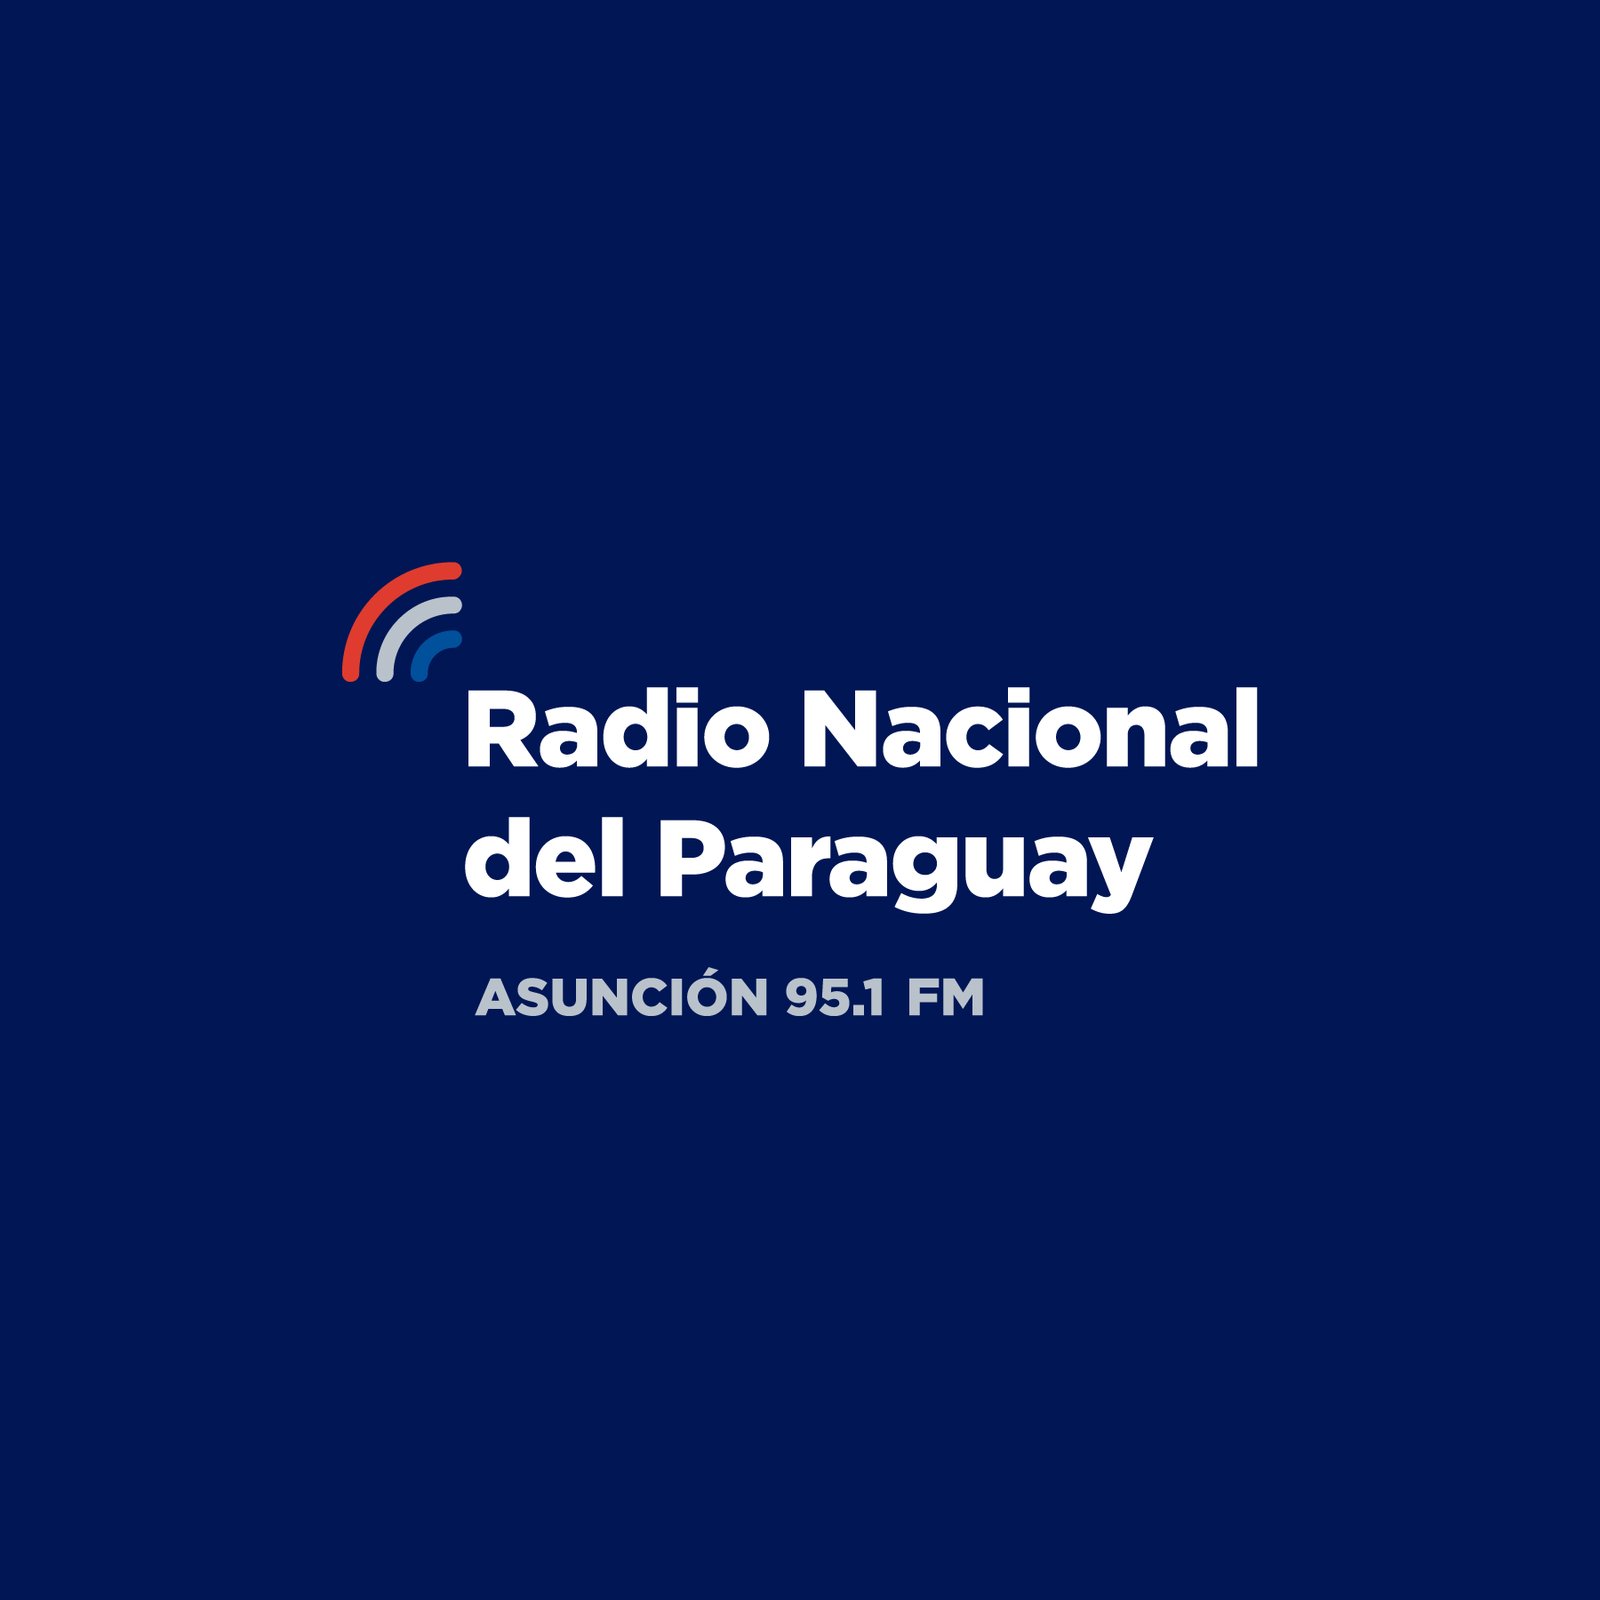 Radio Nacional del Paraguay 95.1 FM en vivo